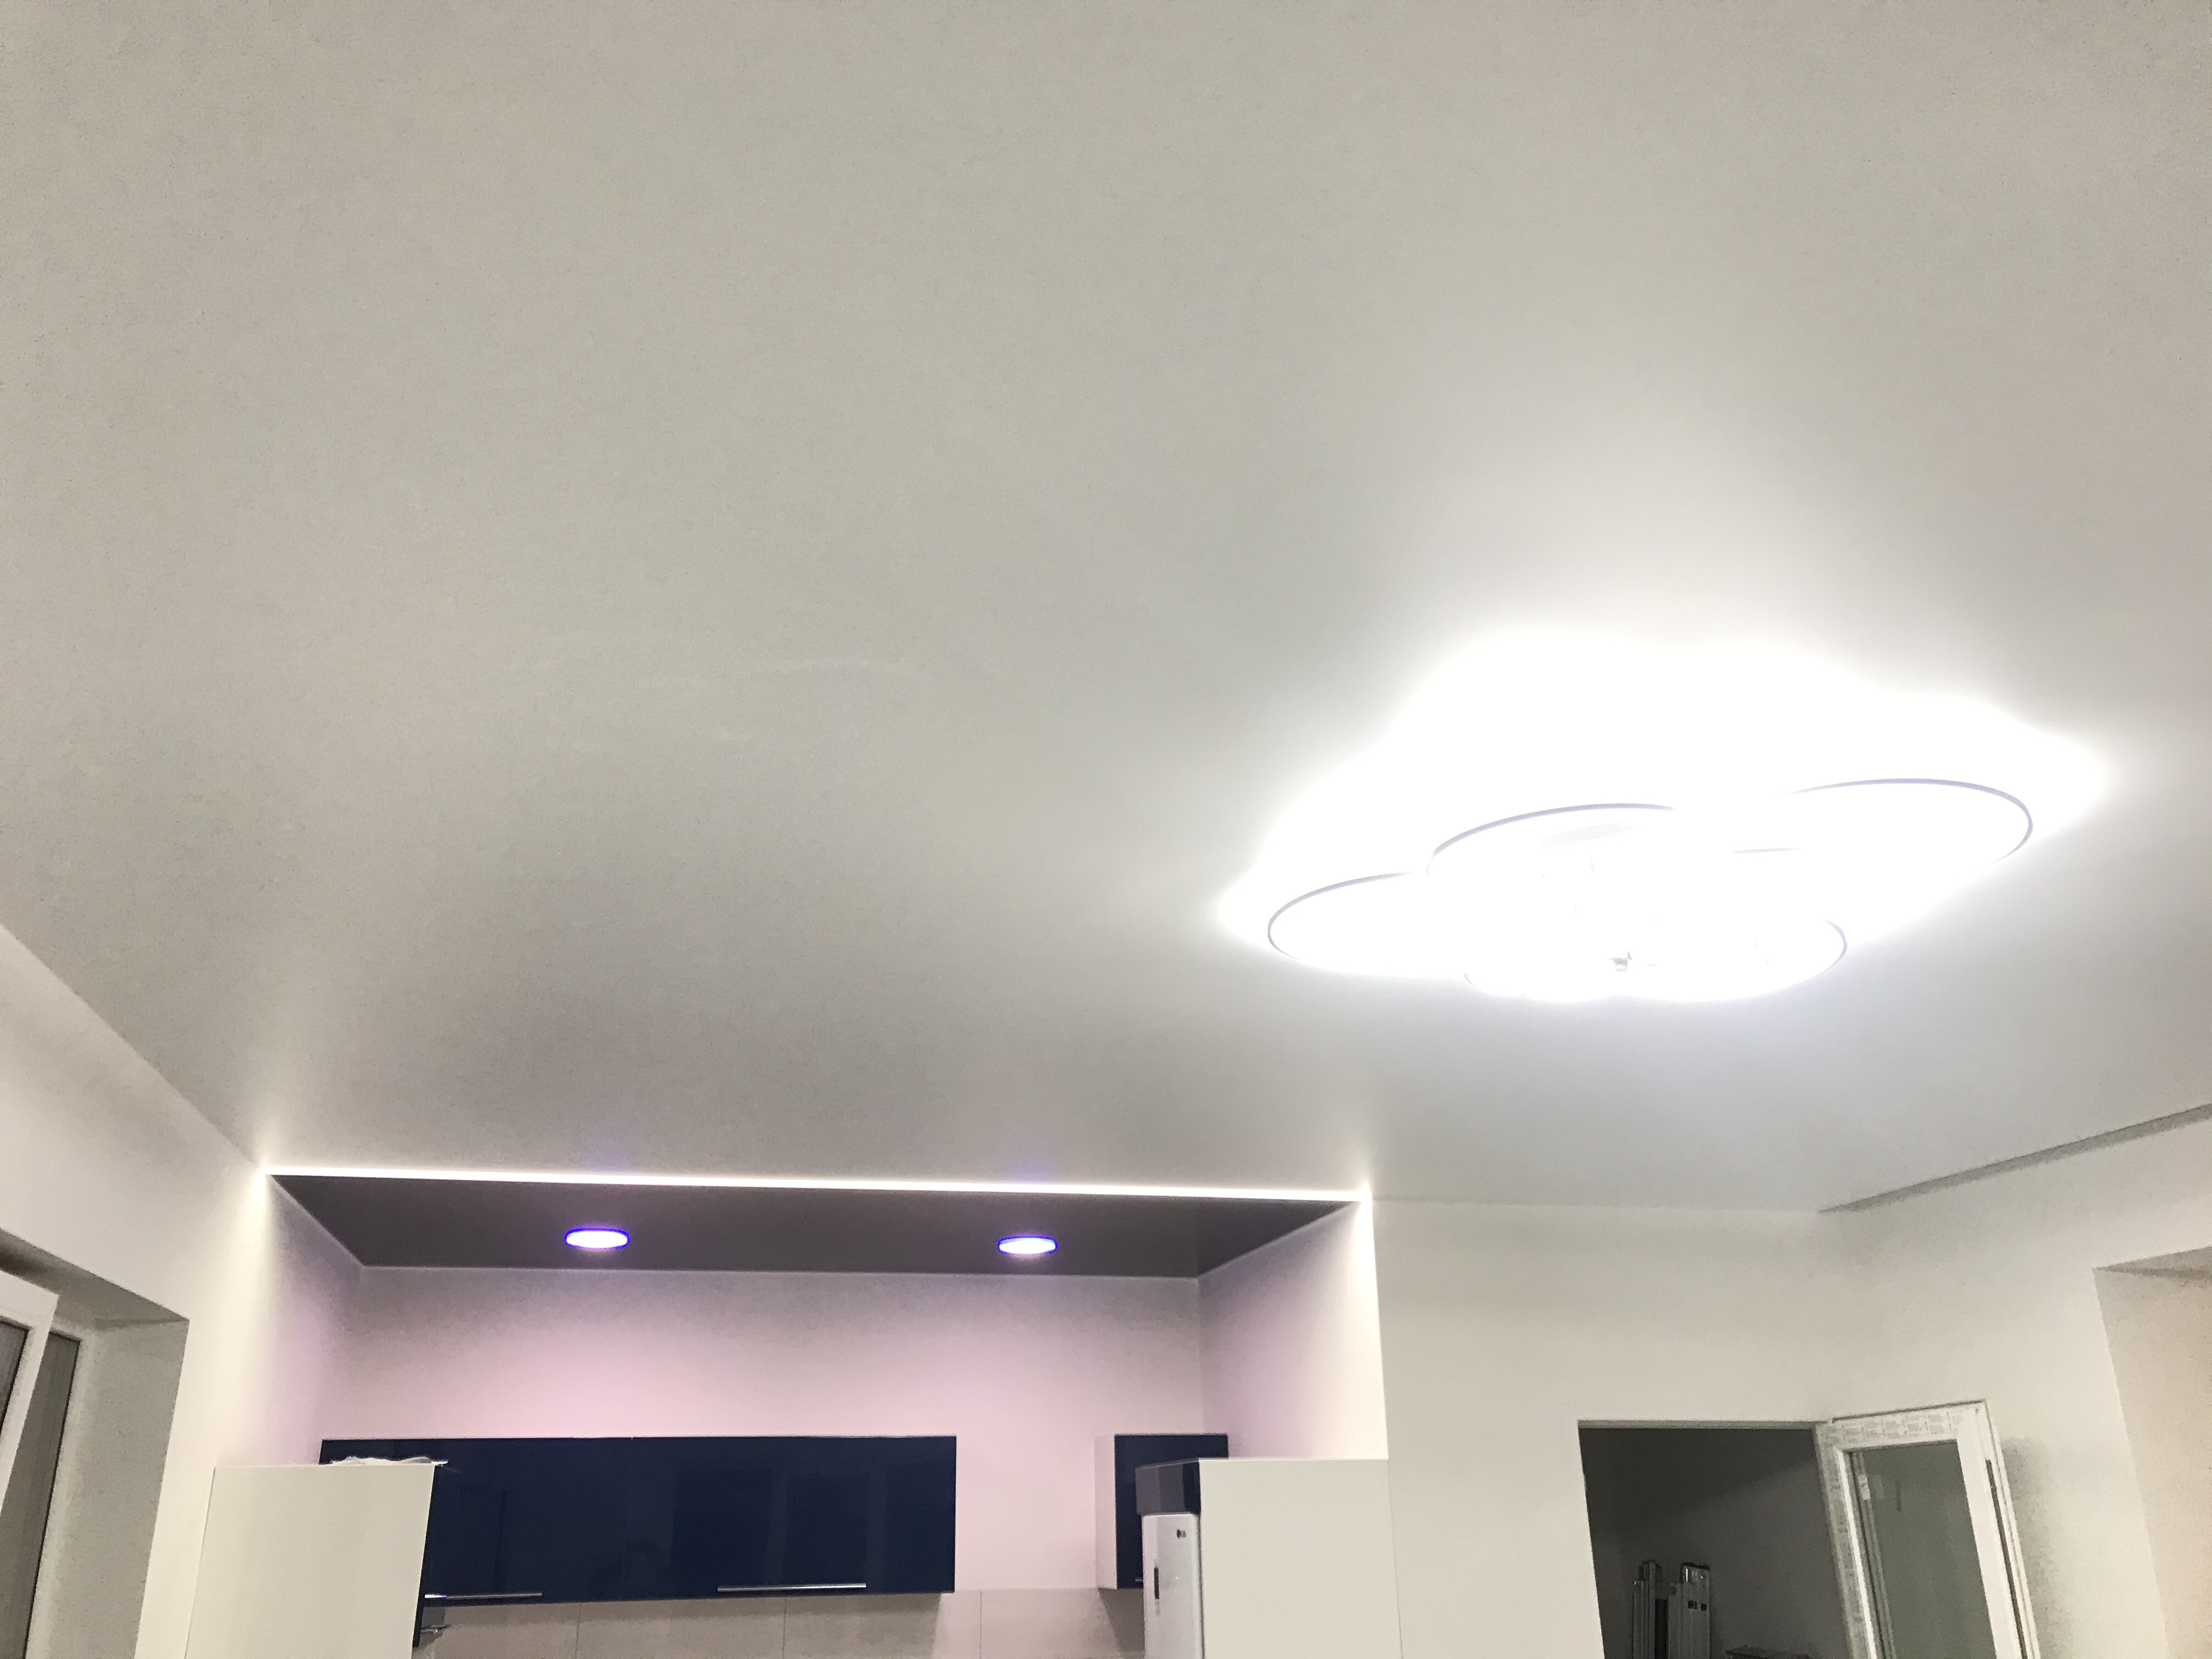 световые линии натяжной потолок на кухне